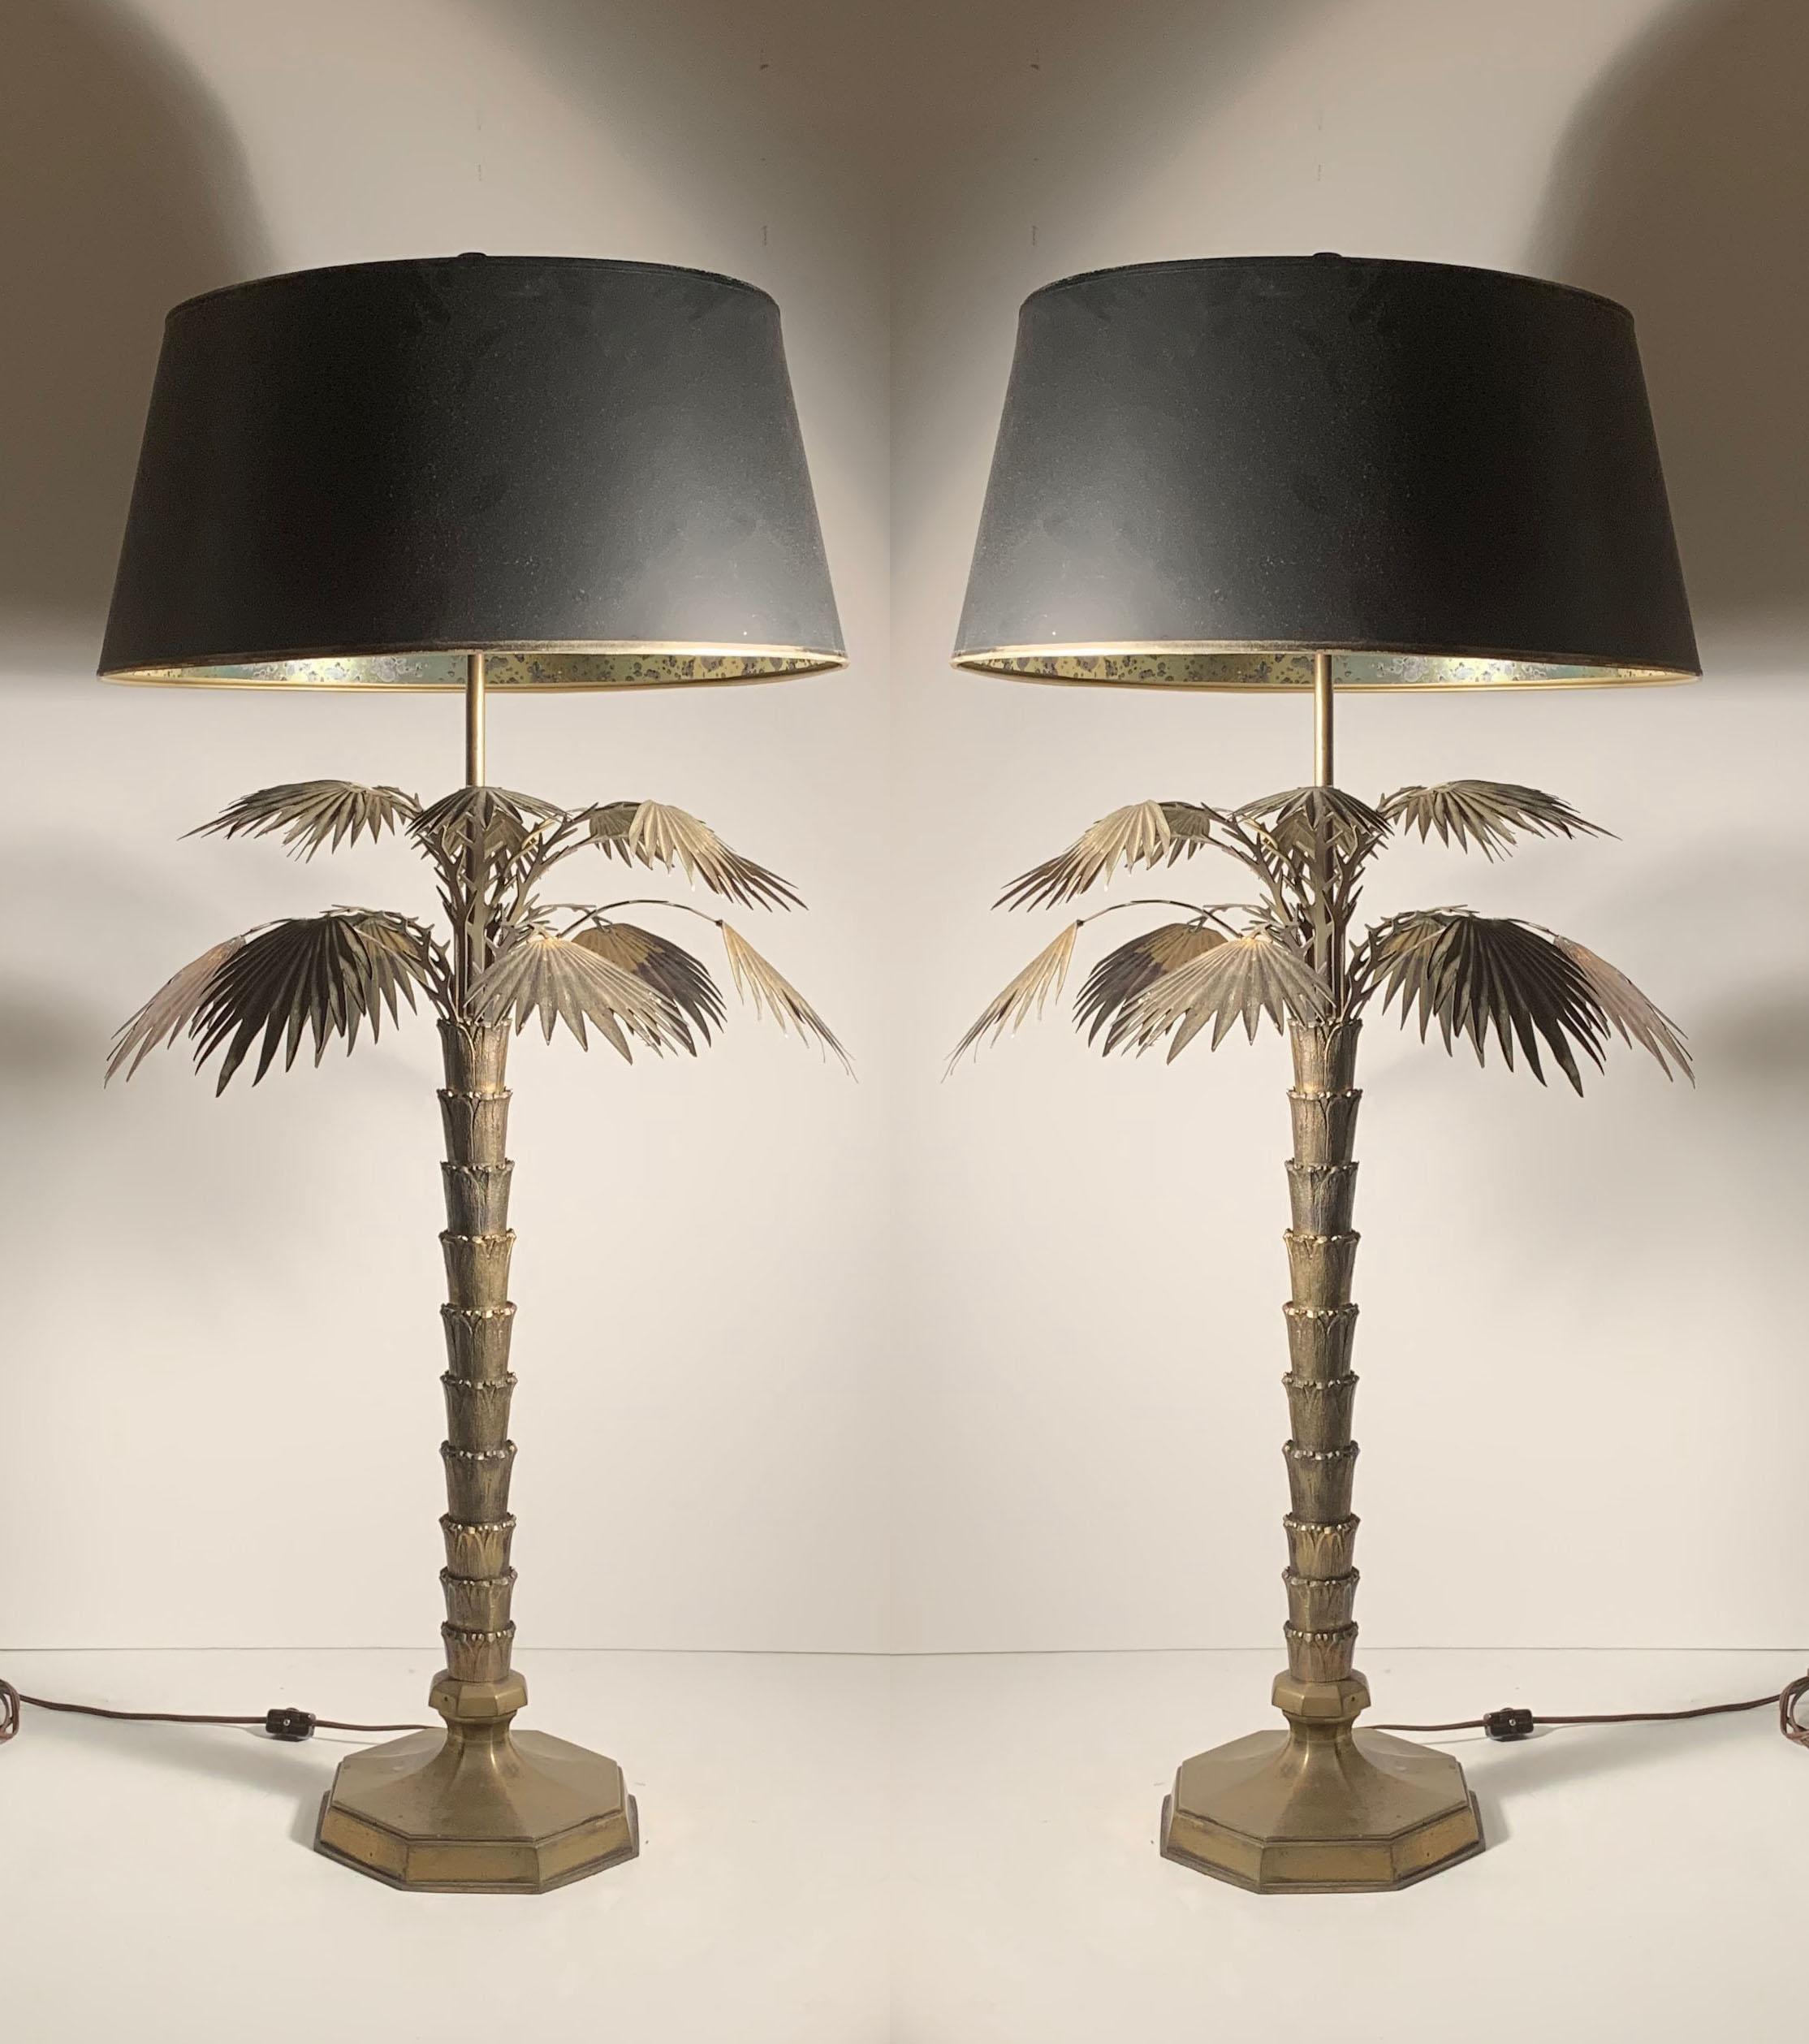 Ein Paar Messinglampen von Chapman Palm aus den 1970er Jahren.

Wird mit 2 Schirmen geliefert. 1 von ihnen hat einen Metalldiffusor als auch auf der Oberseite.